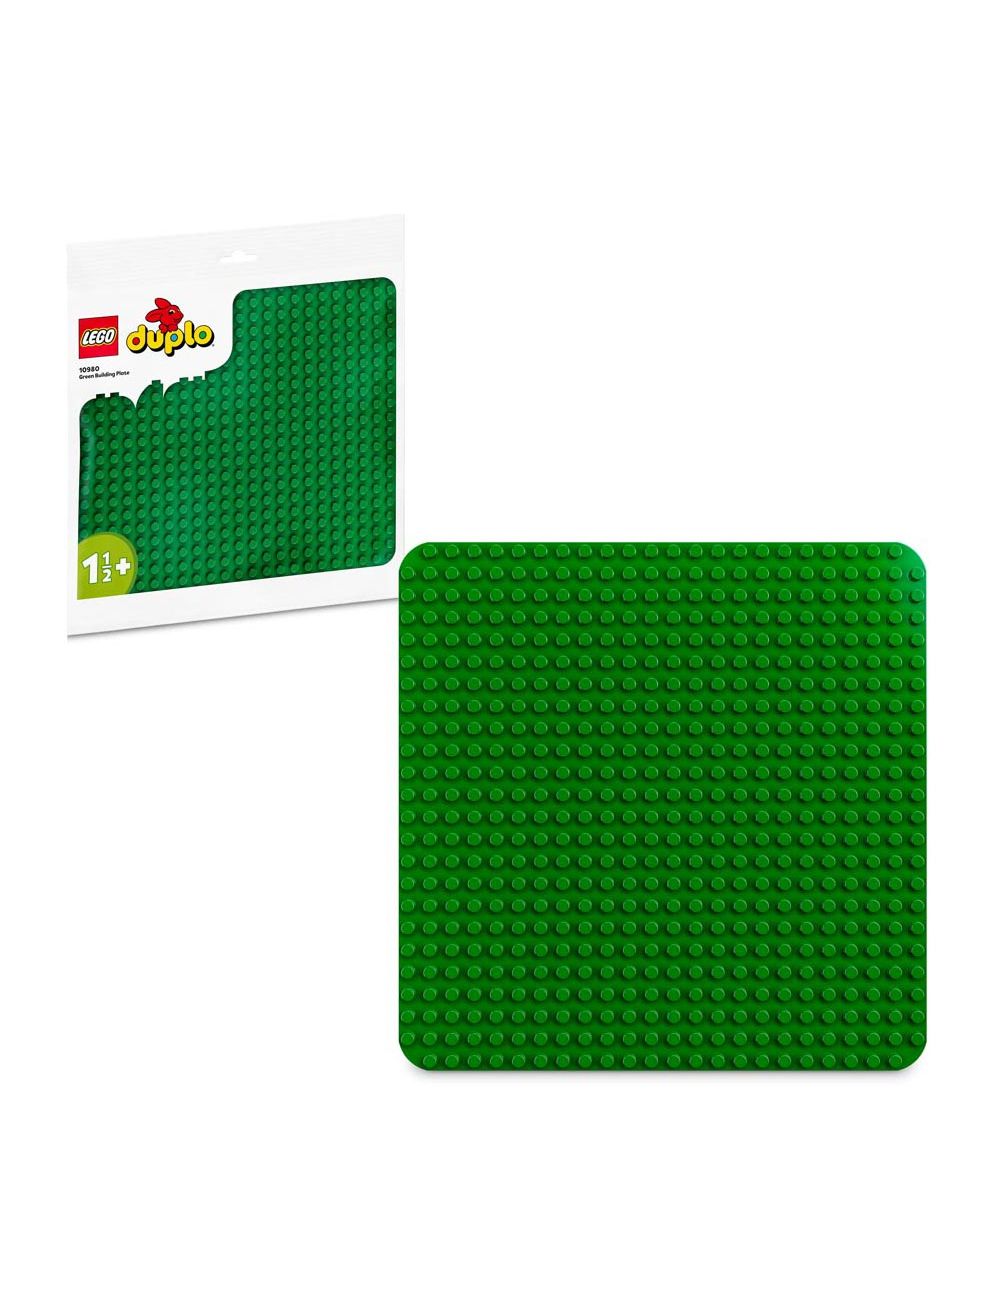 LEGO Duplo Duża Płytka Budowlana Zielona Opakowanie EKO 10980